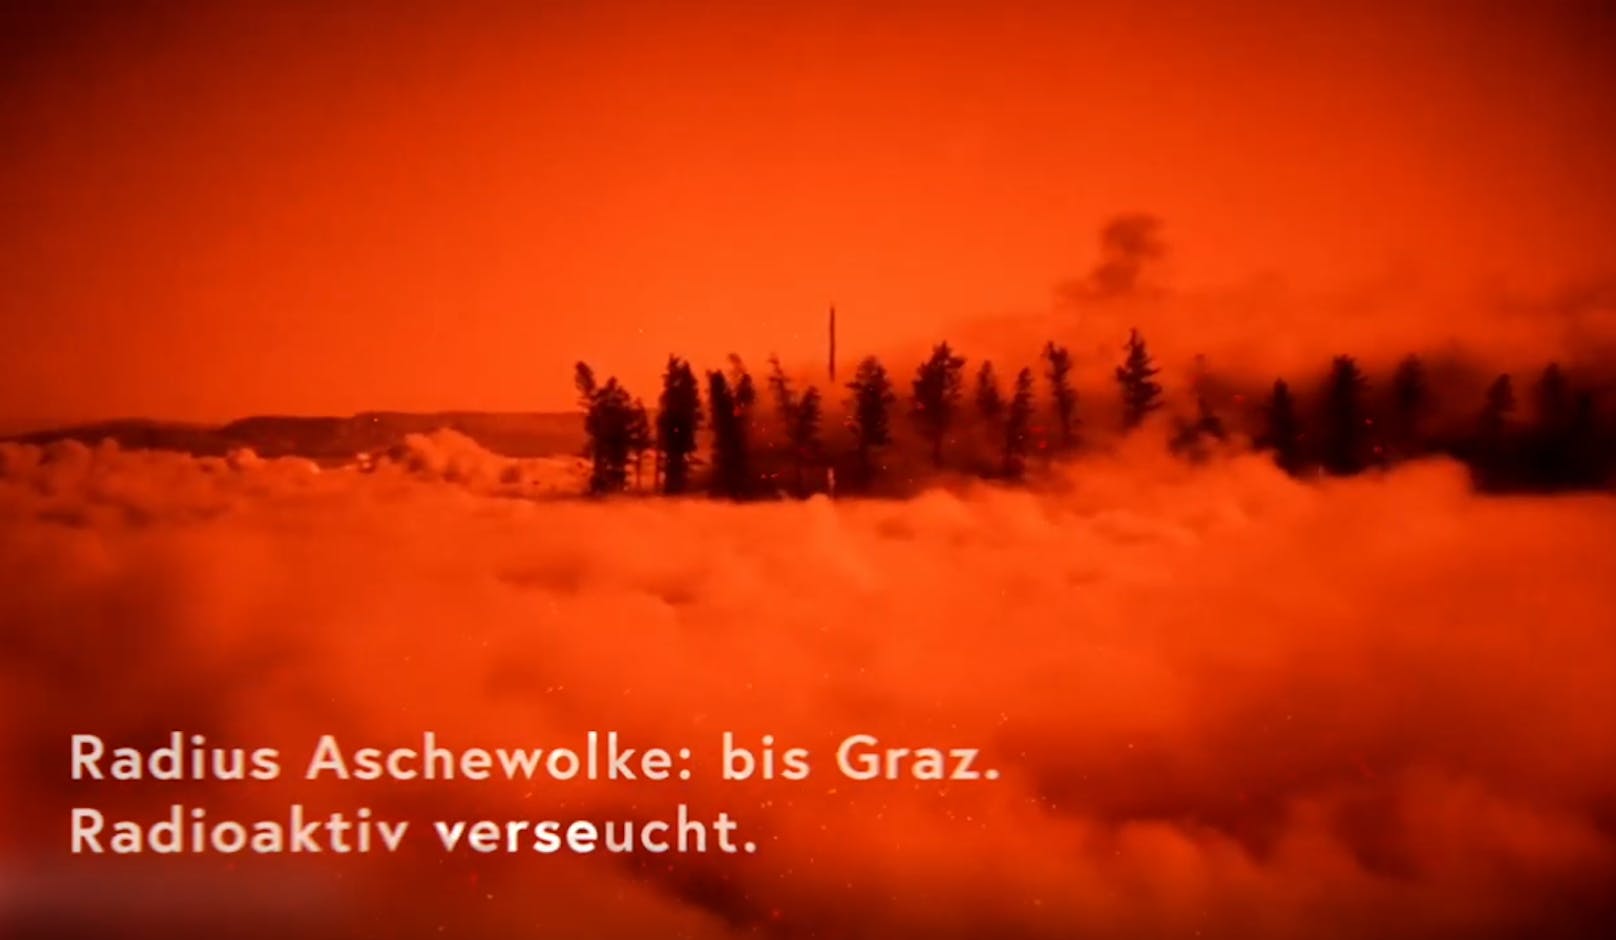 Die radioaktive Aschewolke würde sogar noch das knapp 150 Kilometer entfernte Graz erreichen.